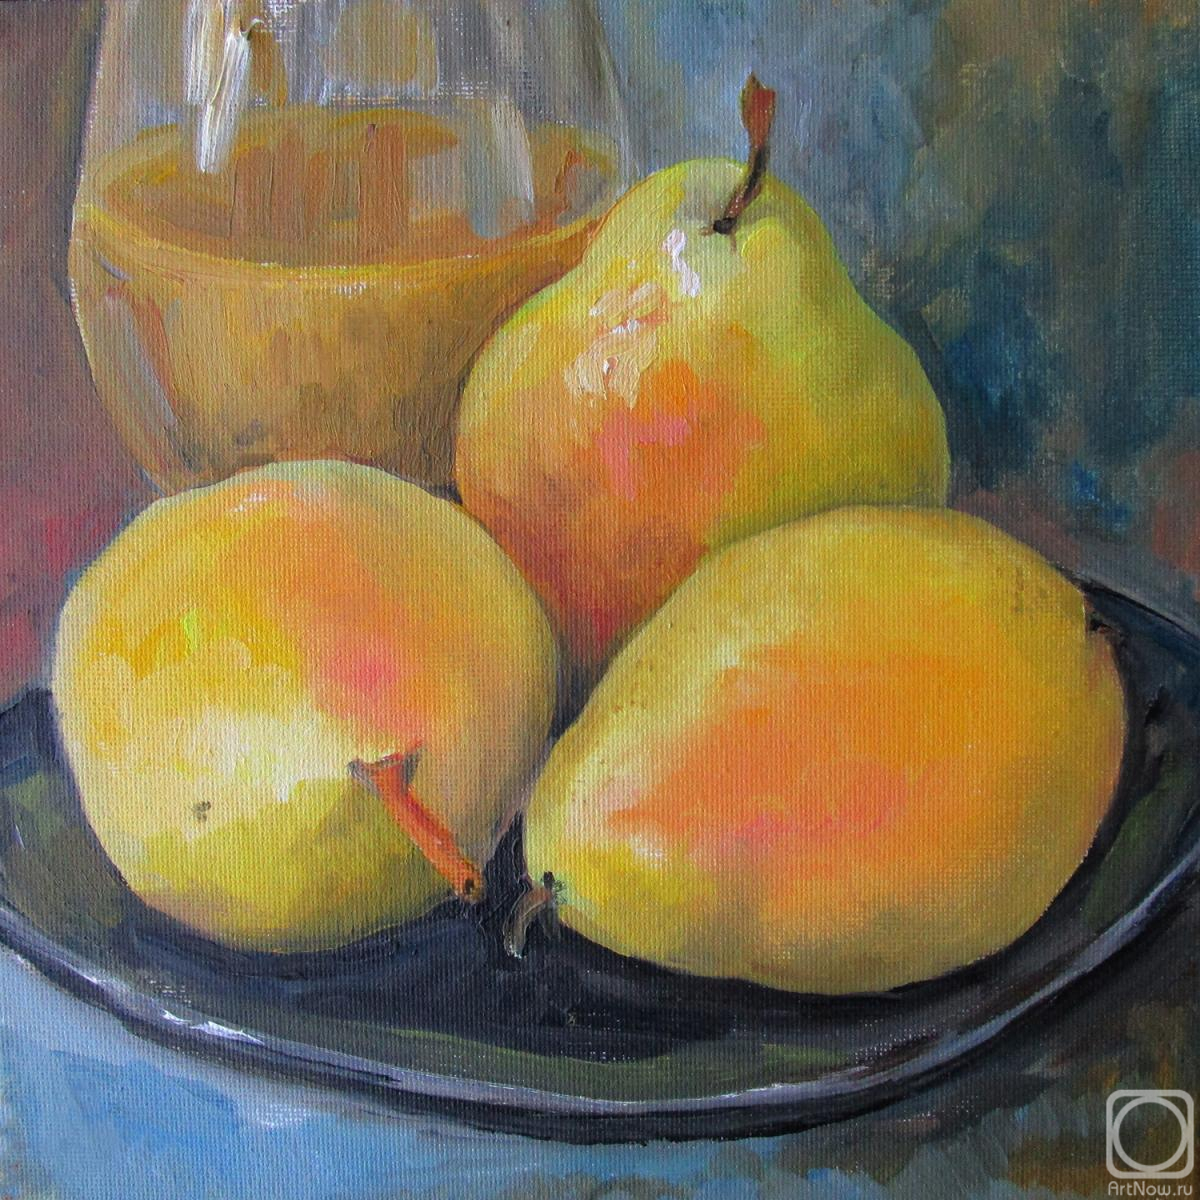 Serova Aleksandra. Three pears